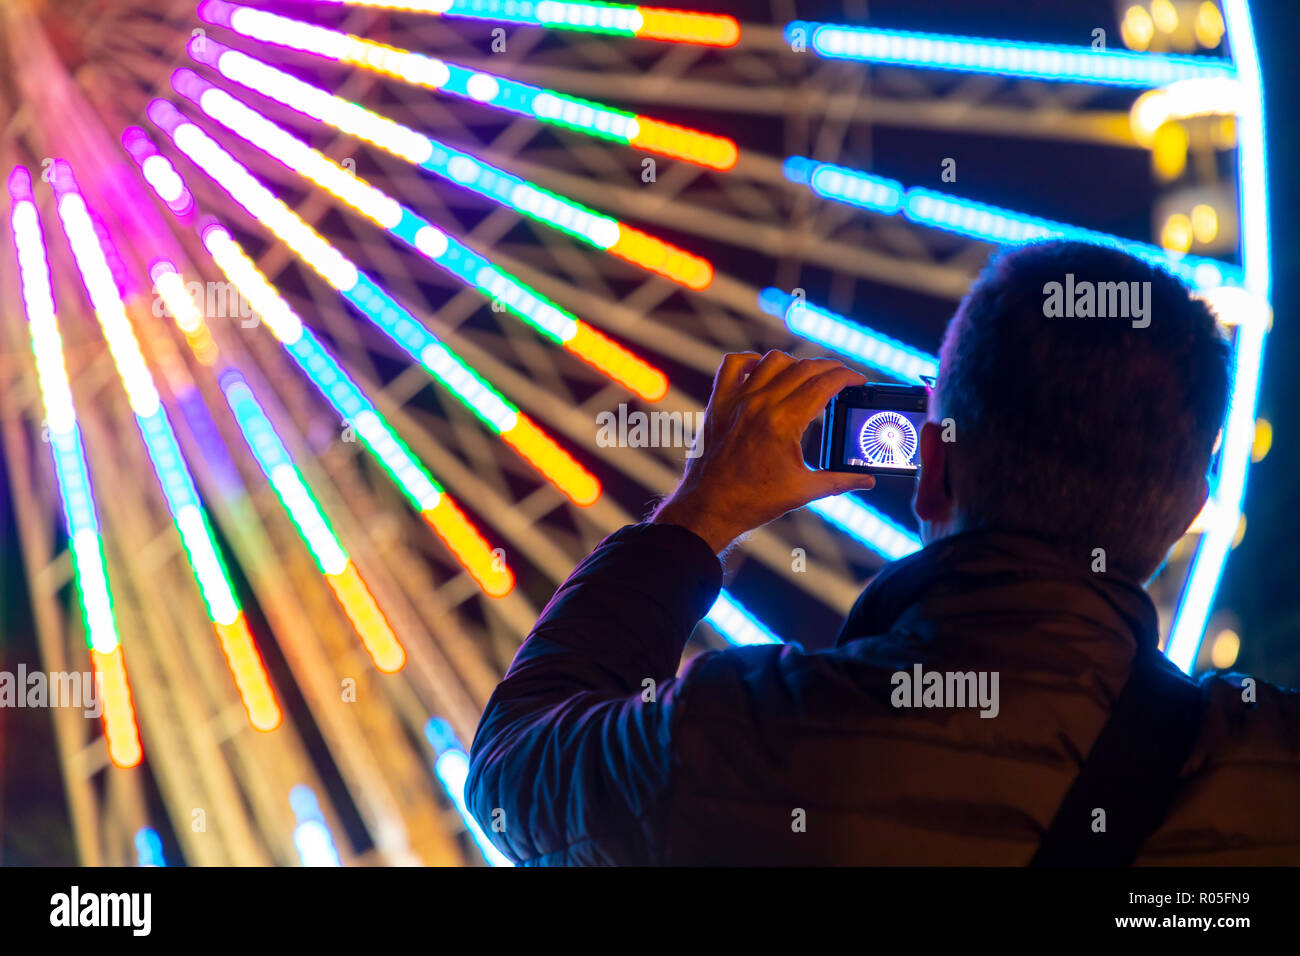 Essen Festival di Luce, luce installazioni artistiche nel centro della città di Essen, illuminato ruota panoramica Ferris a piazza Burgplatz, Germania Foto Stock